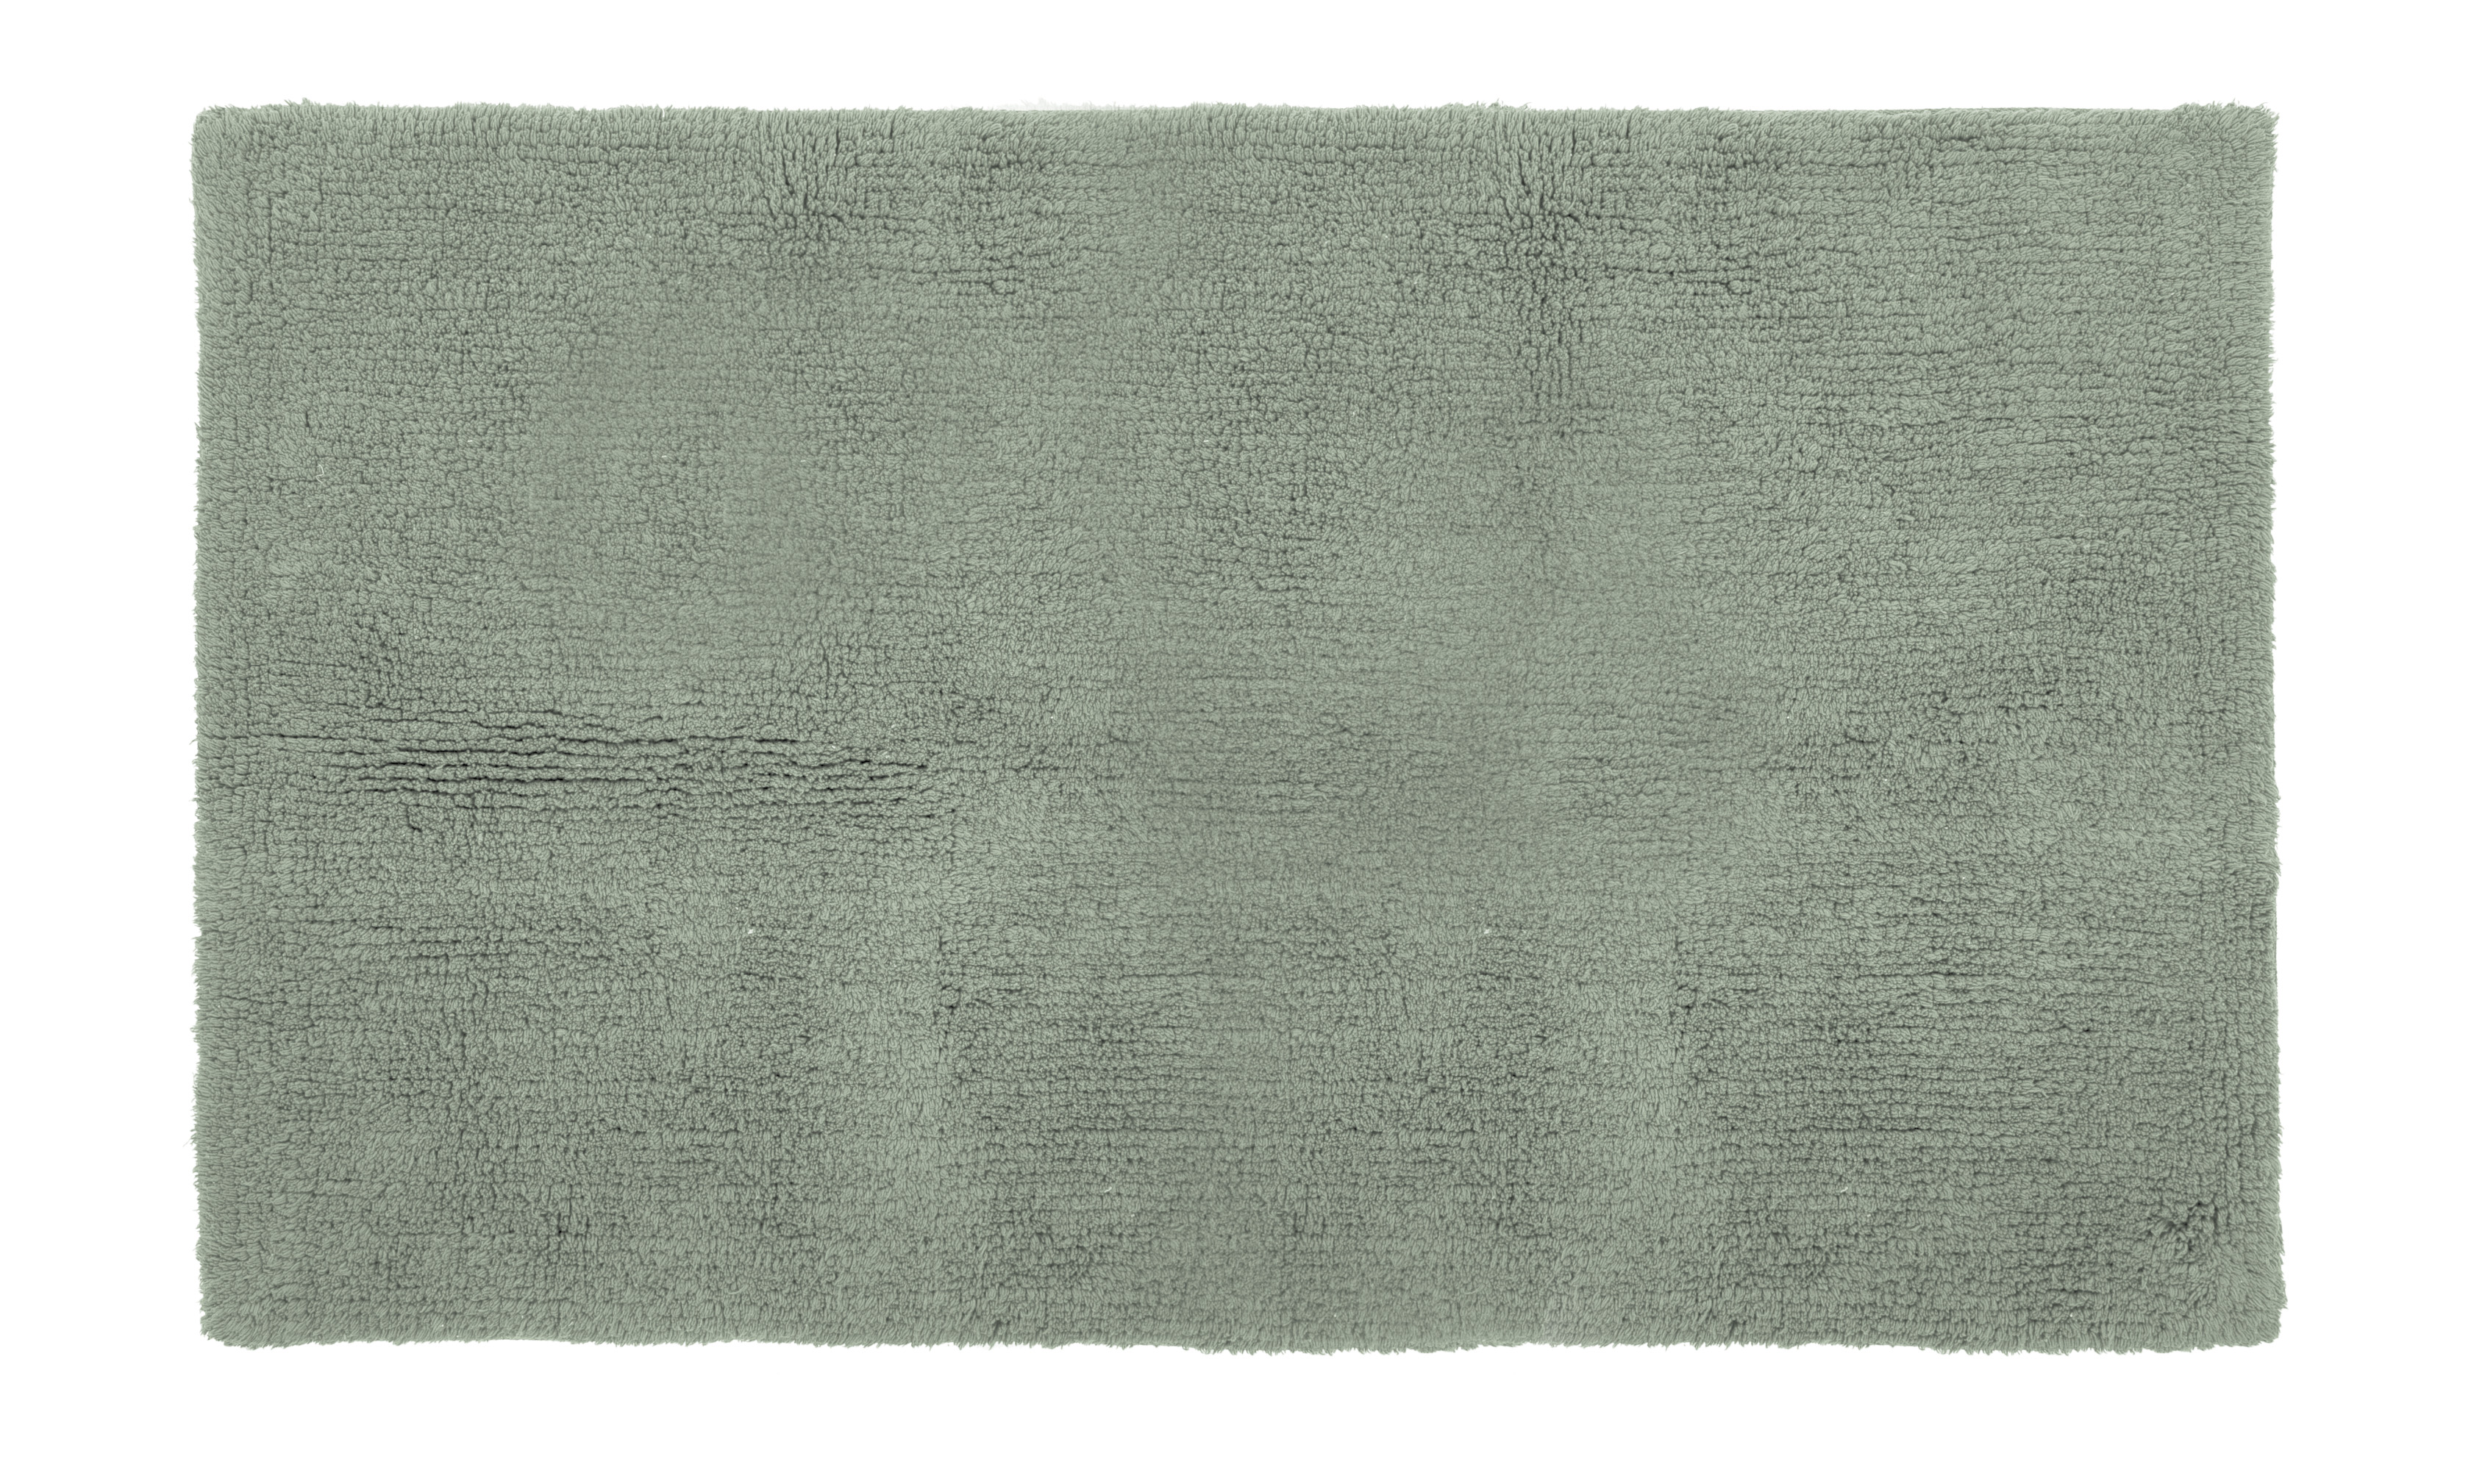 Tapis de bain RIVA- coton antidérapant, 60x100cm, stone green